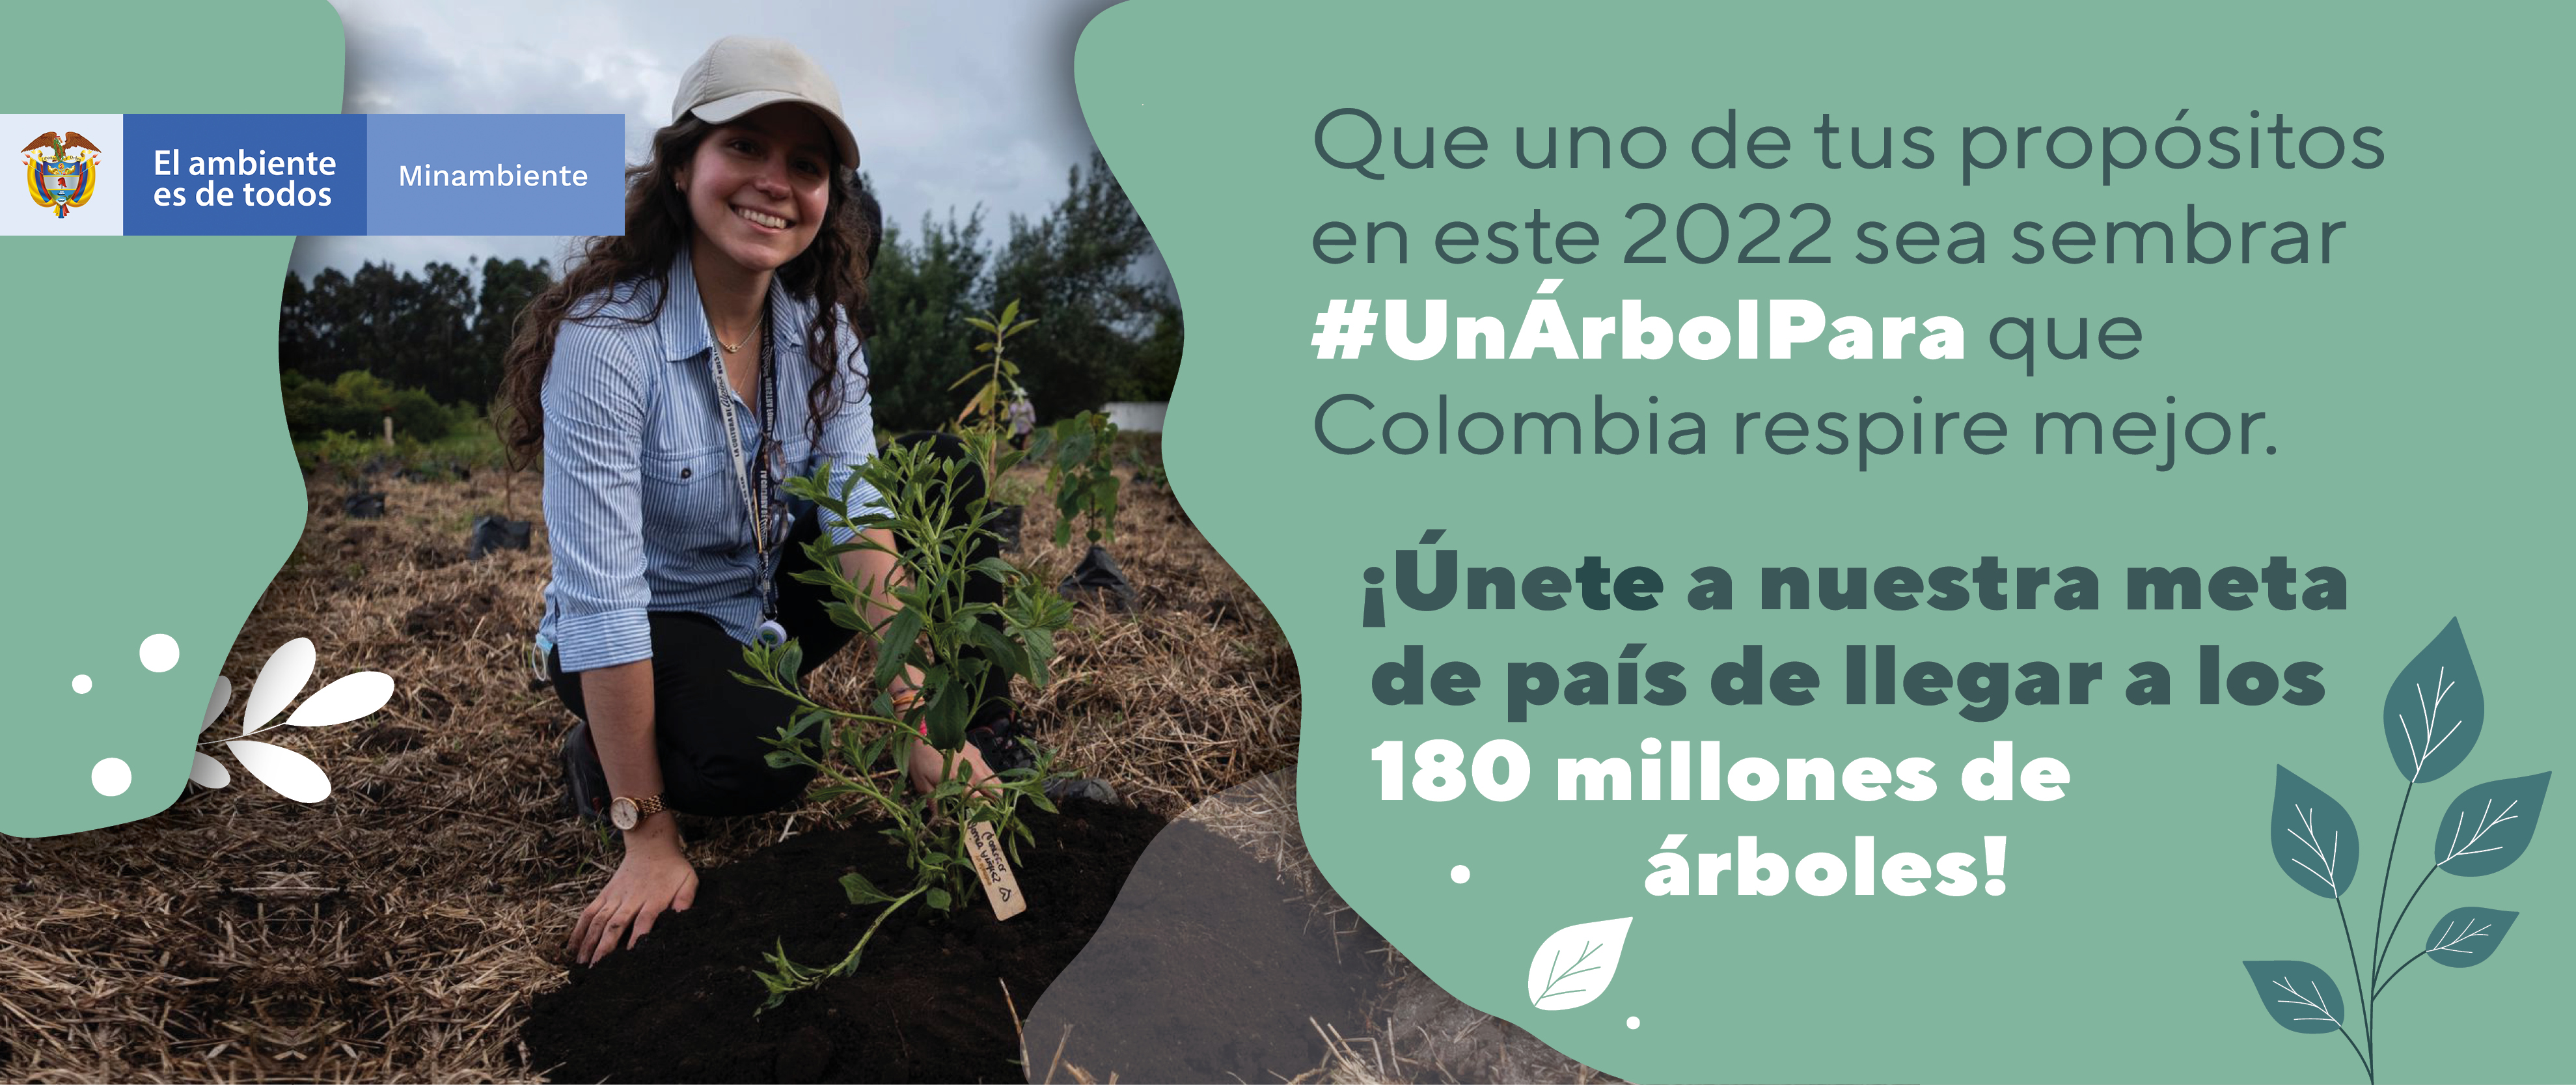 Un árbol para que Colombia respire mejor este 2022